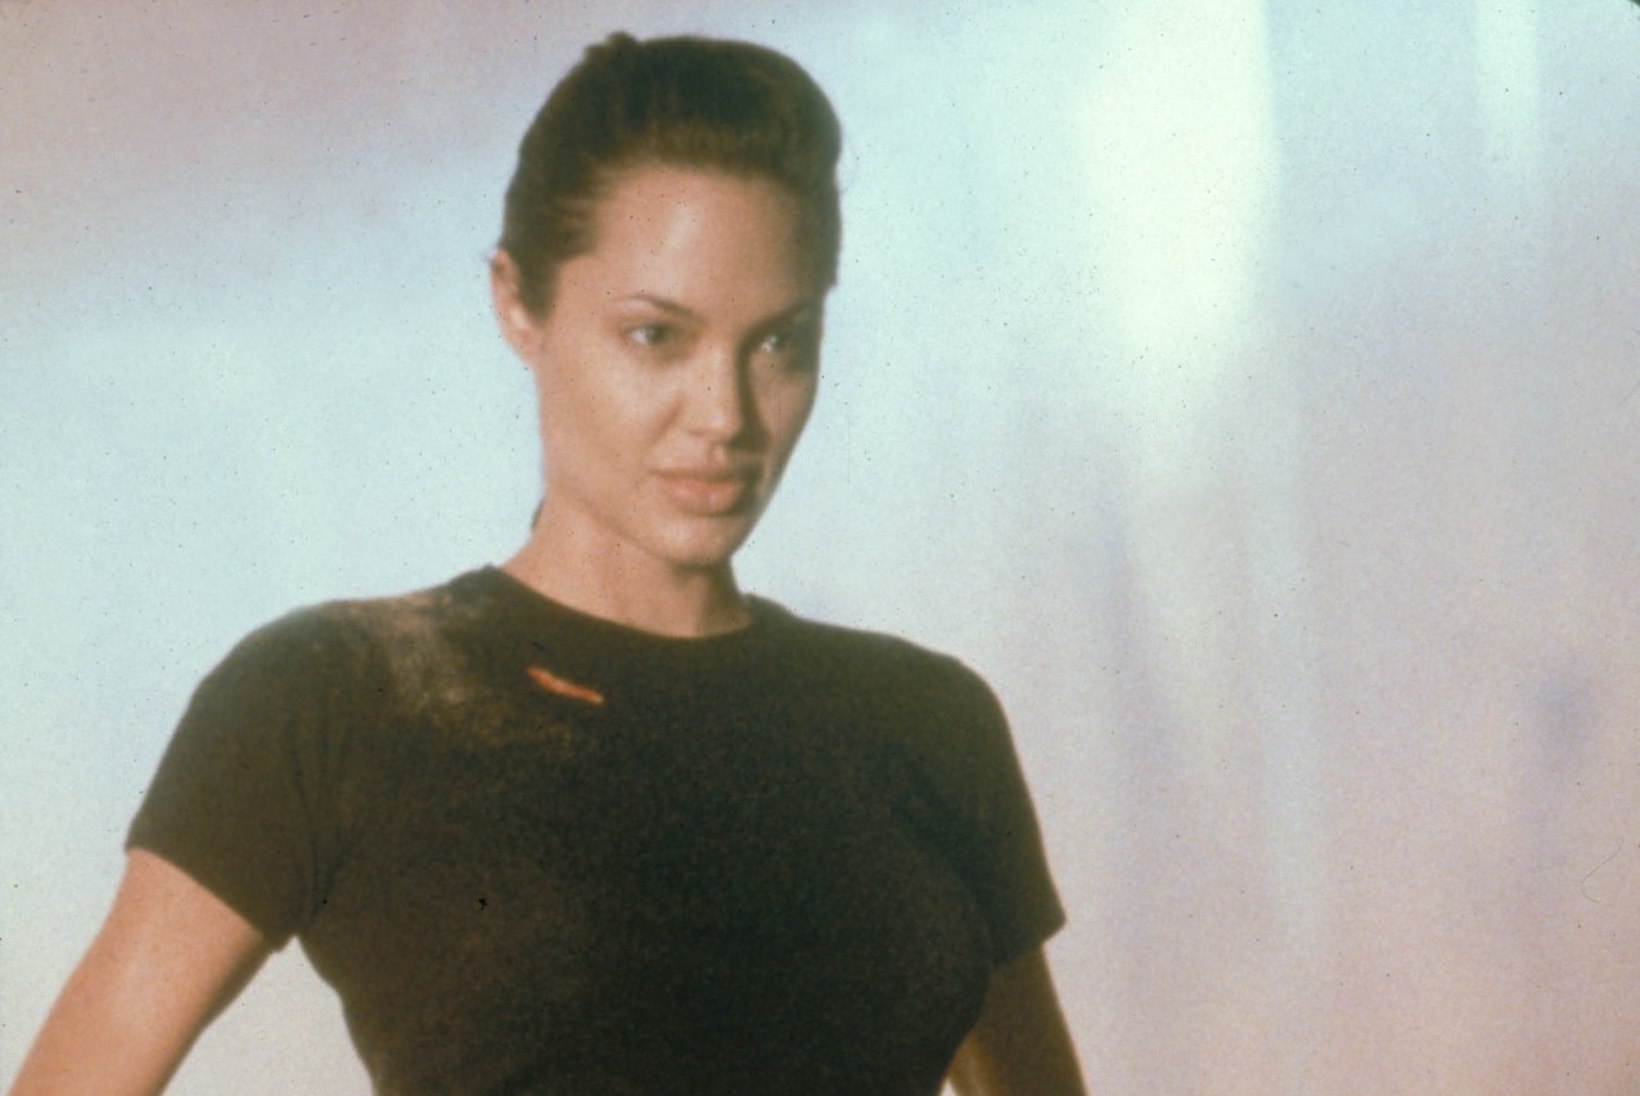 Vaata, kas Alicia Vikander on Lara Croftina sama kuum kui Angelina Jolie